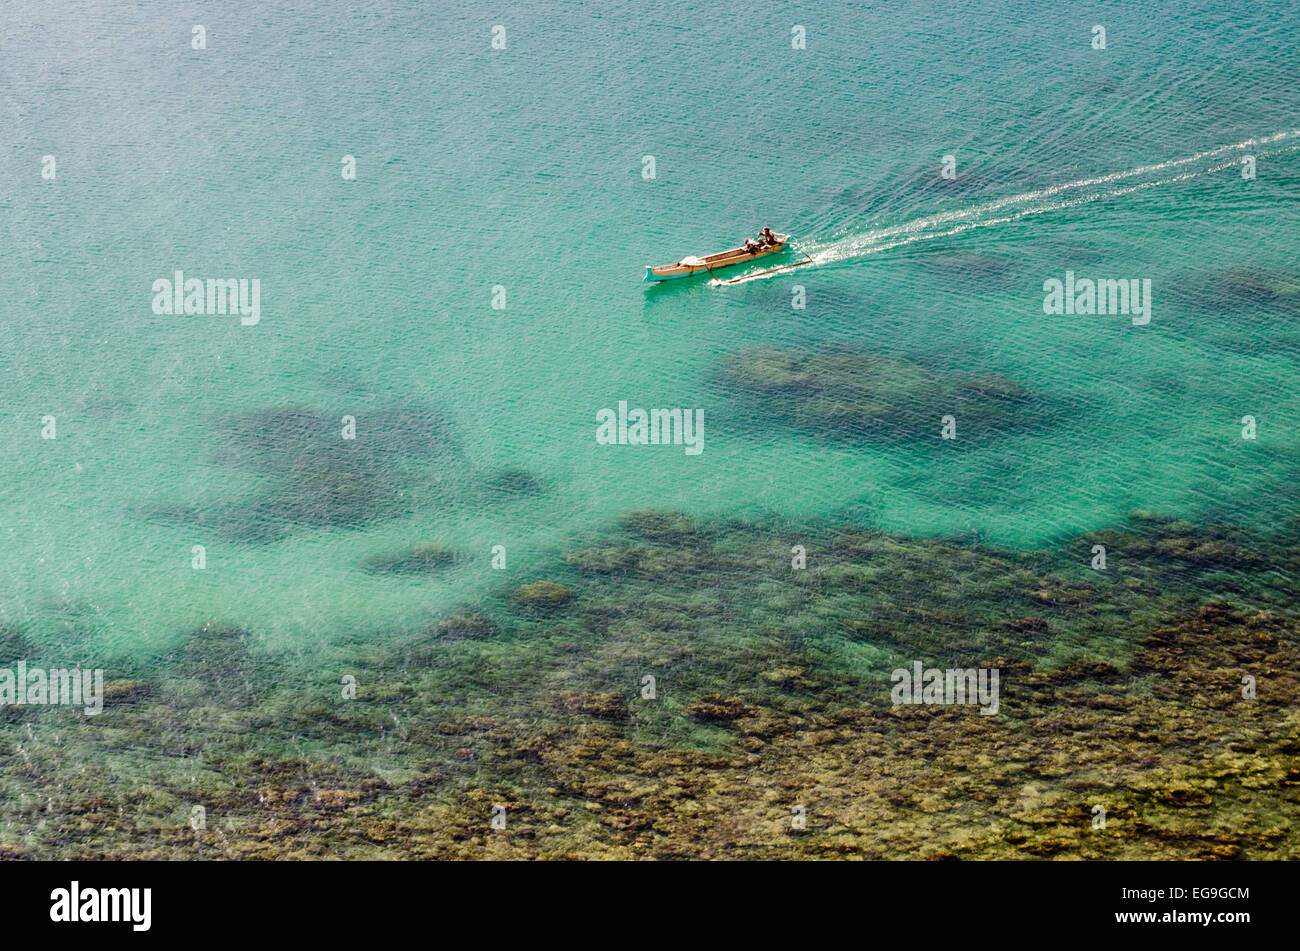 Indonesien, Lombok, erhöhte Ansicht von Fischerboot im Meer Stockfoto